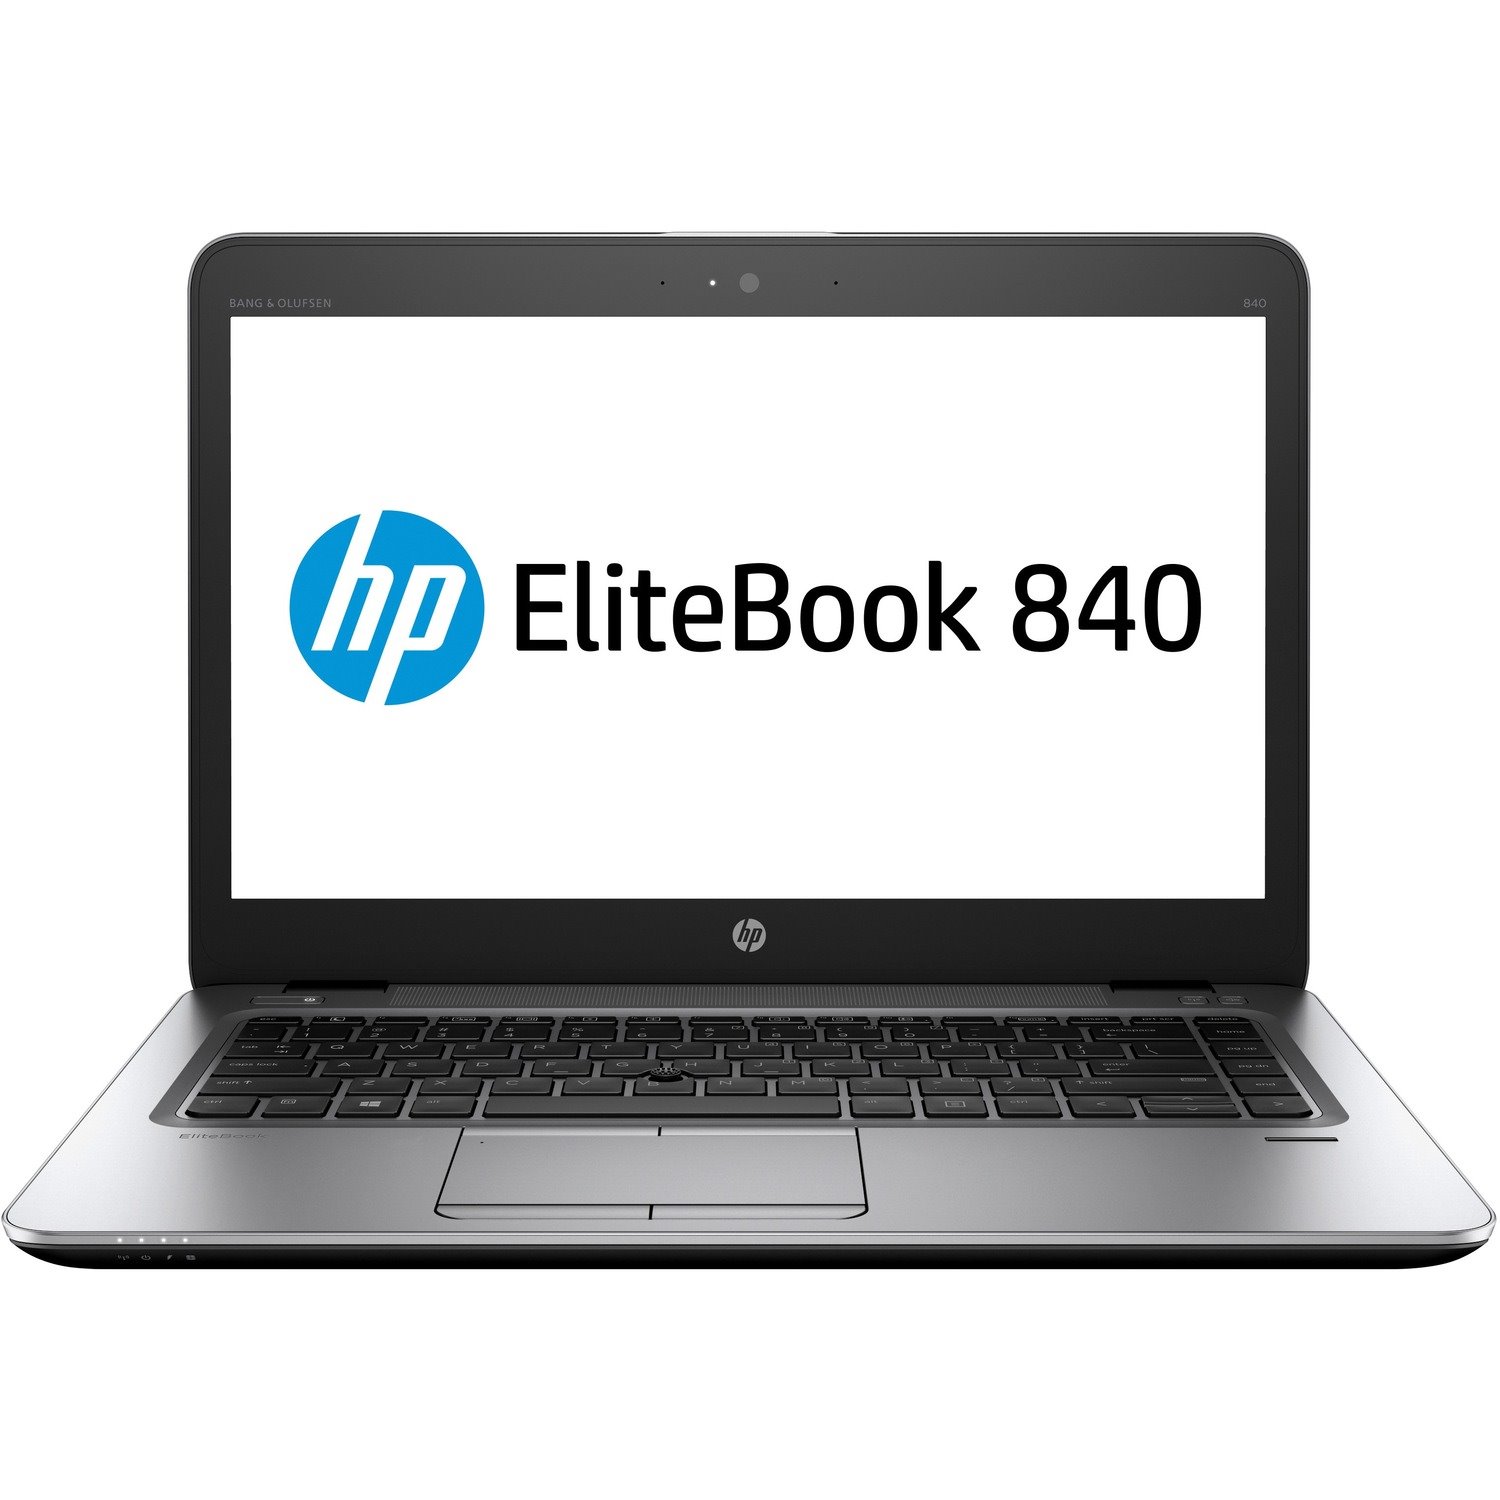 HP EliteBook 840 G3 14" Notebook - 1920 x 1080 - Intel Core i5 6th Gen i5-6200U Dual-core (2 Core) 2.30 GHz - 8 GB Total RAM - 256 GB SSD